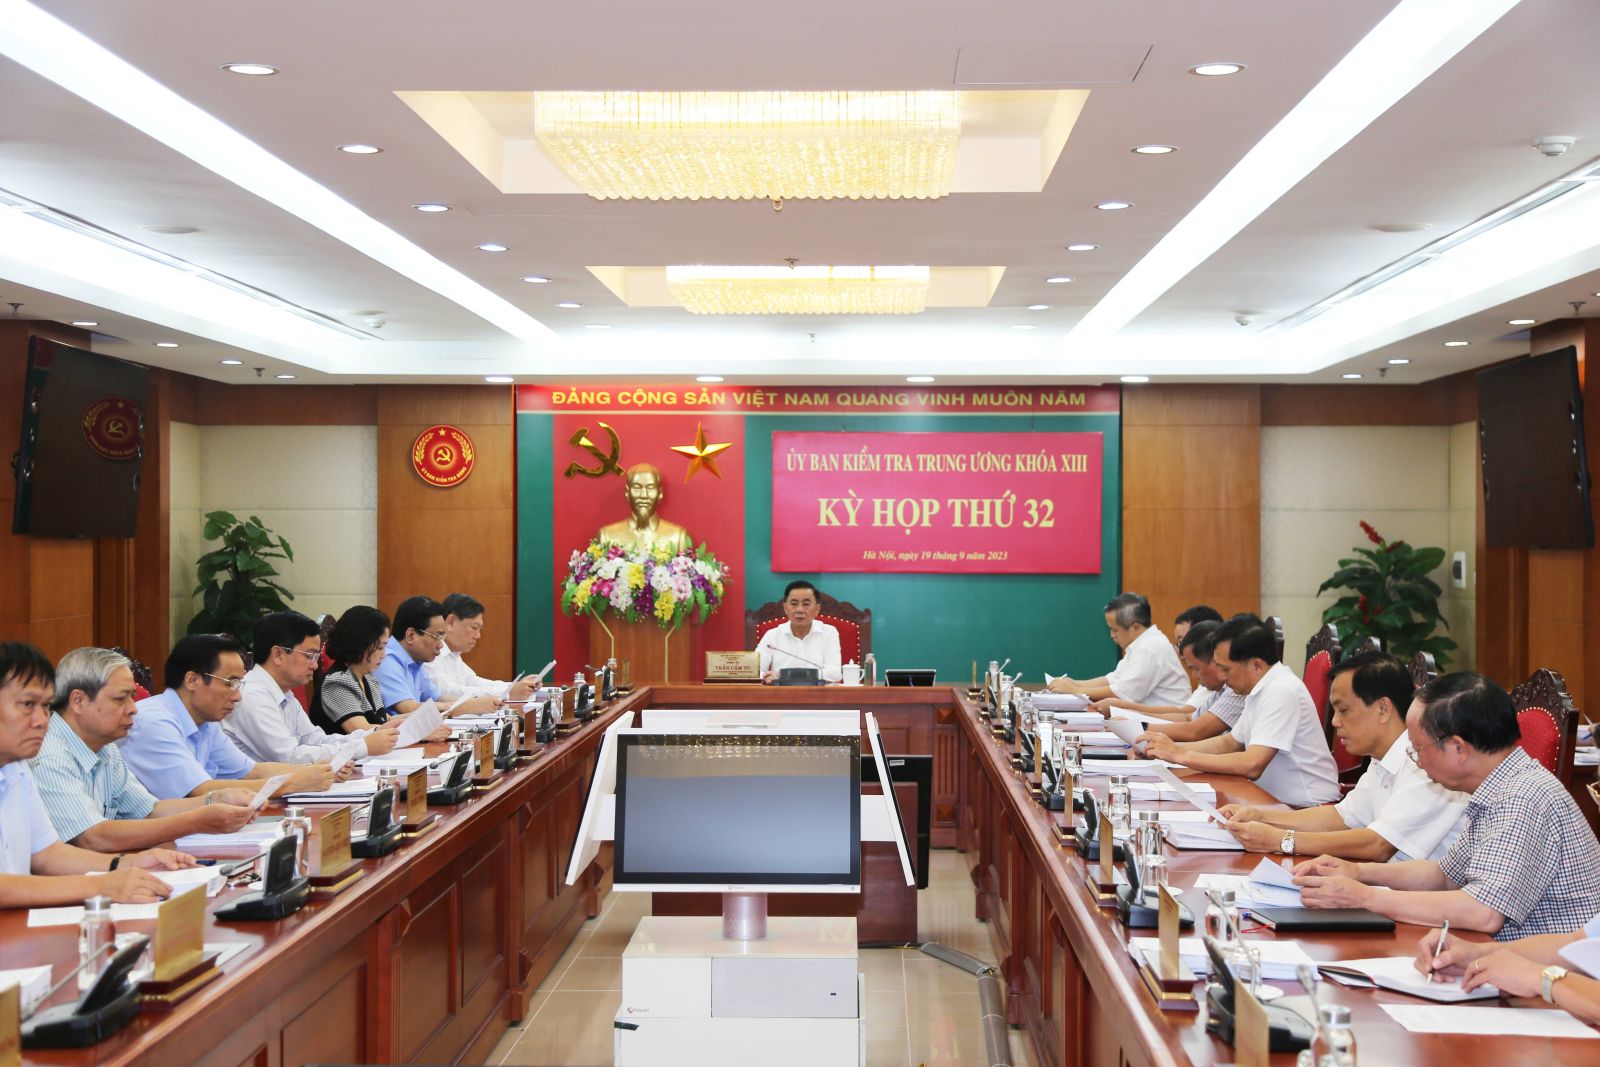 Thủ tướng kỷ luật Phó Chủ tịch và 2 nguyên Phó Chủ tịch UBND tỉnh Quảng Ninh - Ảnh 1.